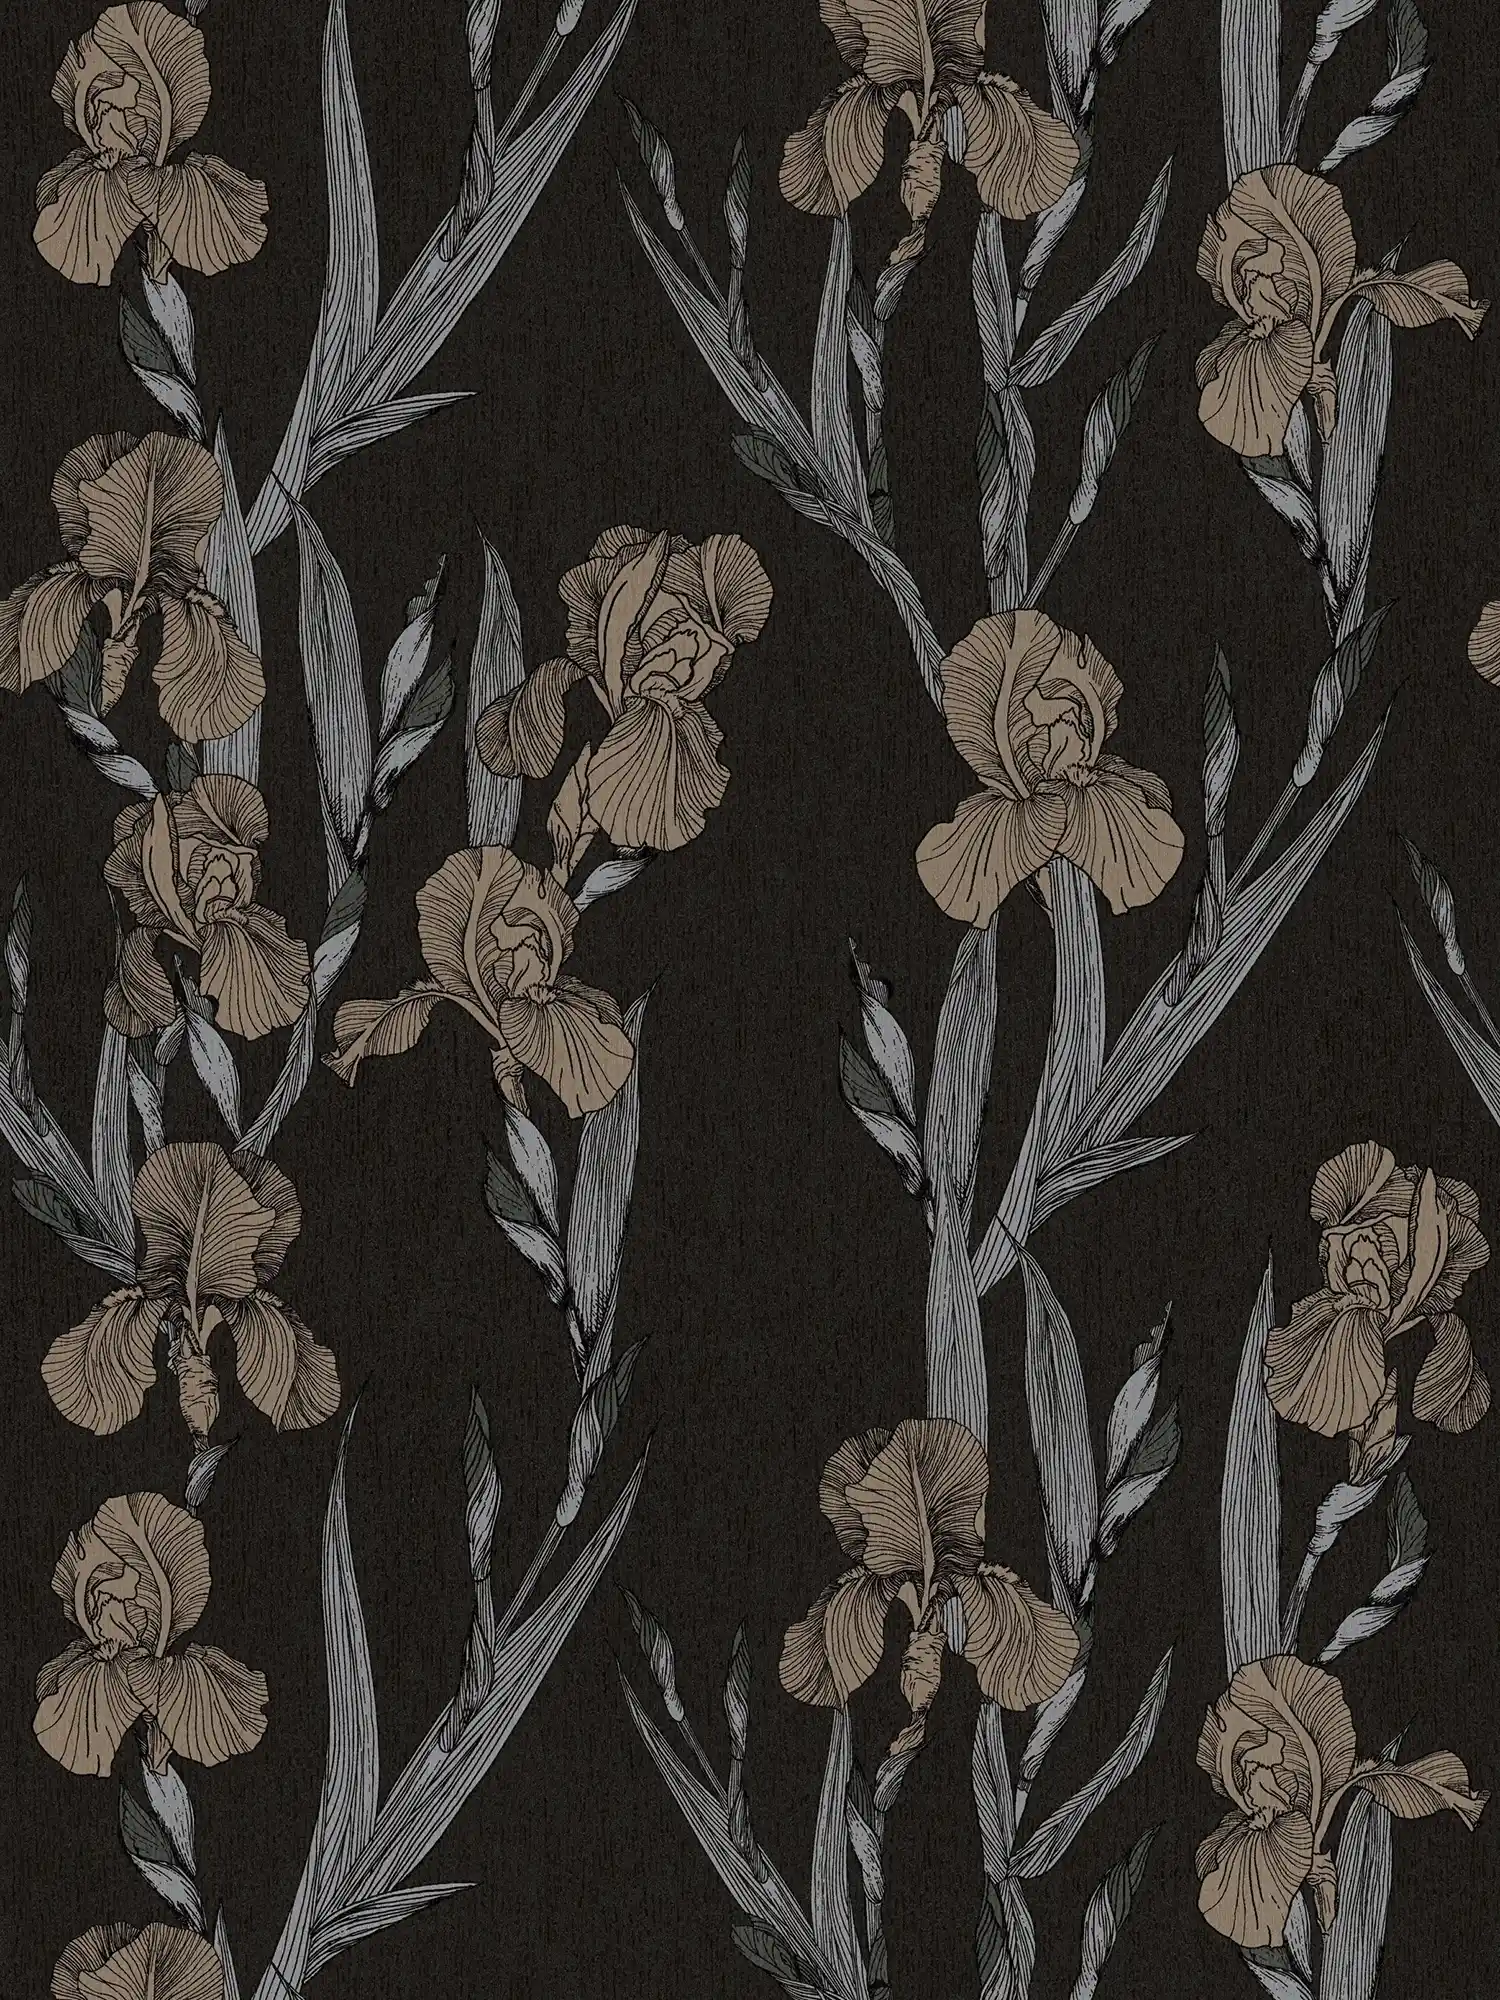 Papel pintado con motivos florales en estilo de dibujo - negro, gris, marrón
